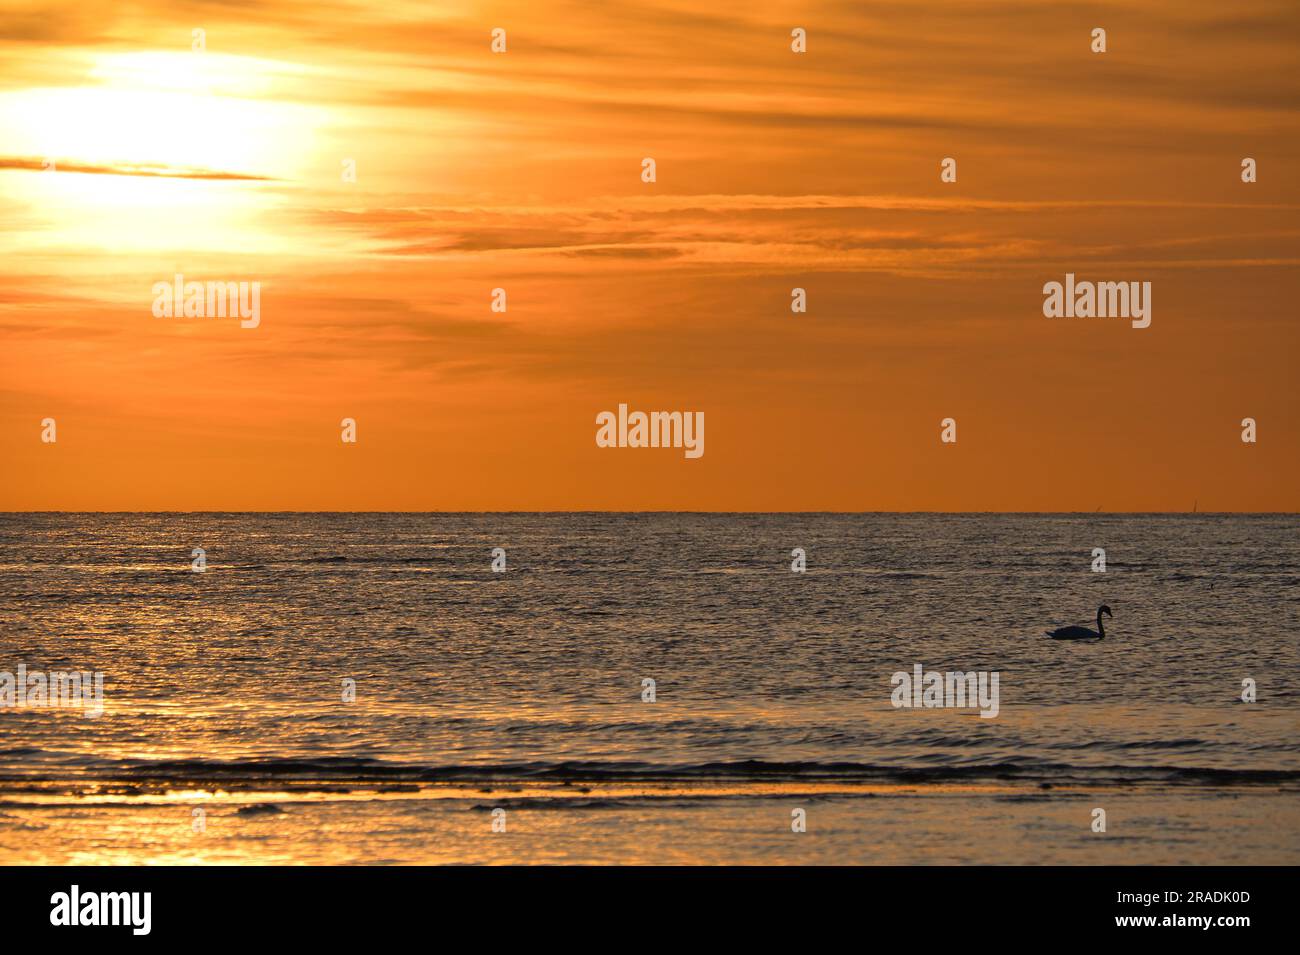 Tramonto, cigni che nuotano nel mare illuminato. Onde luminose. Isola di Poel sul Mar Baltico. Foto della natura dalla costa Foto Stock